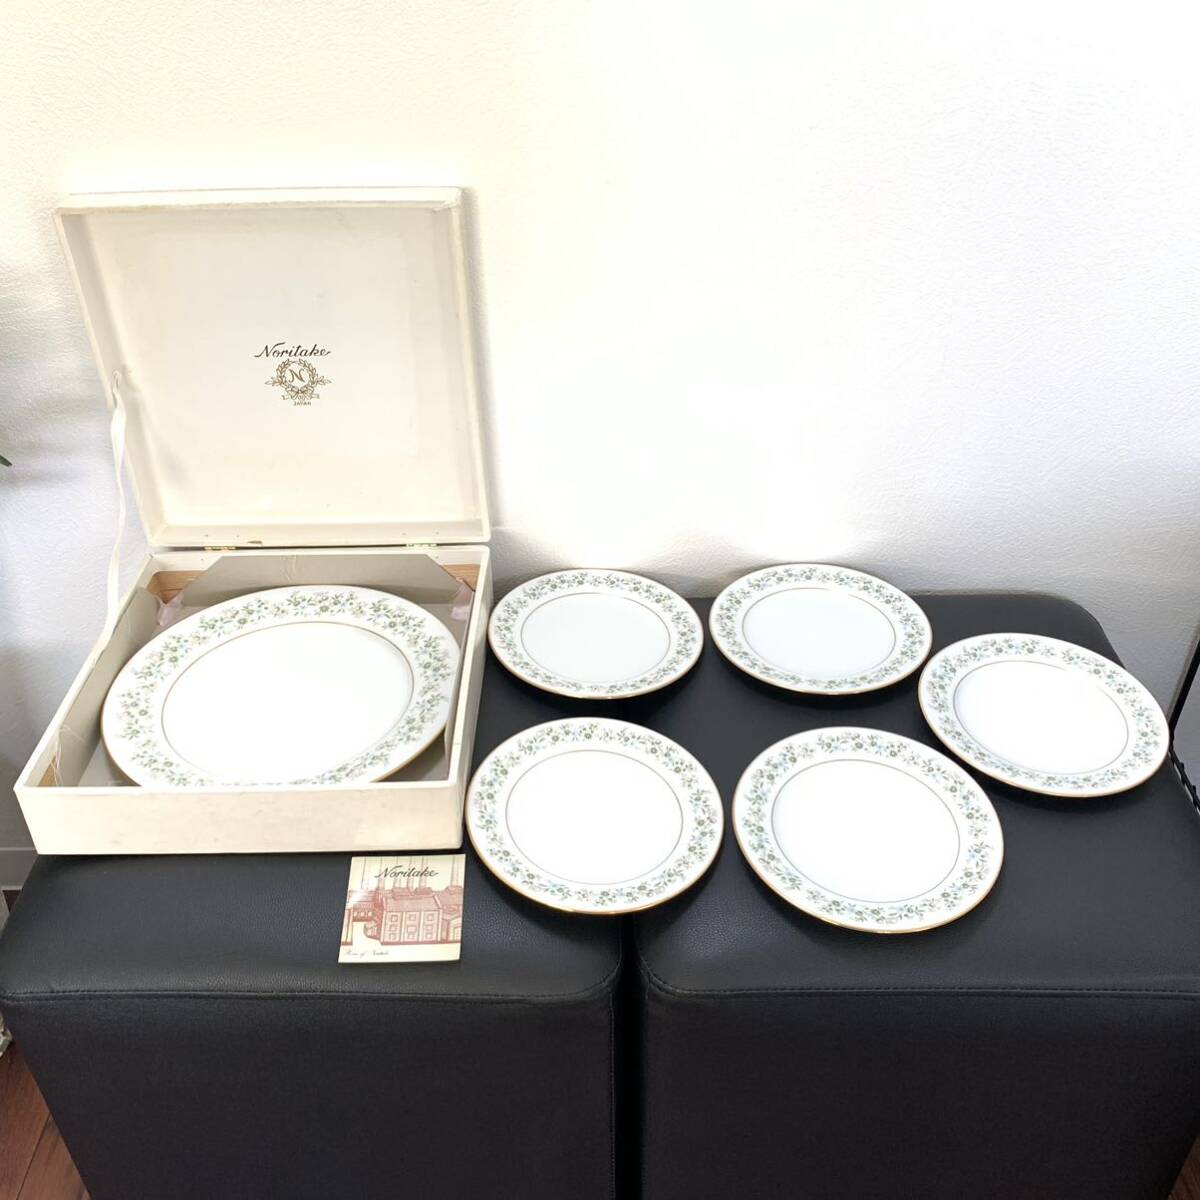 ノリタケ 6枚セット 小プレート5皿:17.8cm/大プレート1皿:26.8cm お皿 ホワイト 白 花柄 ブランド食器 Noritakeの画像8